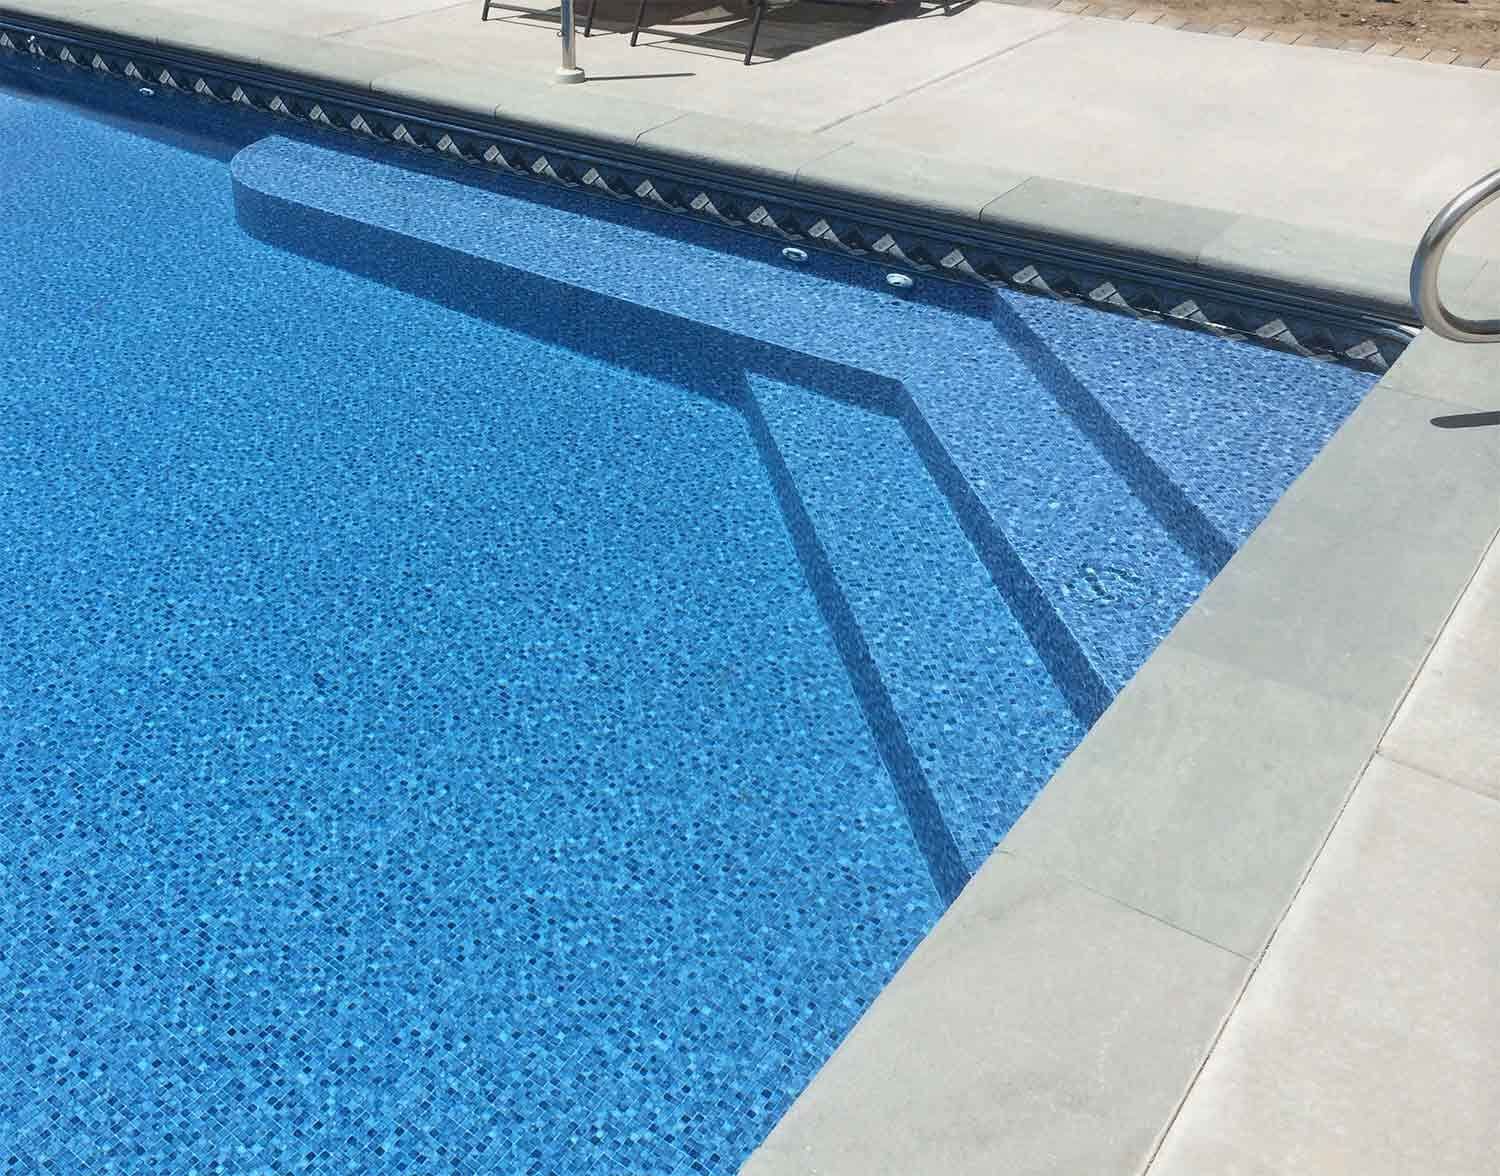 Pool Sun Bench Installation, SoFlo Pool Decks and Pavers of Boca Raton